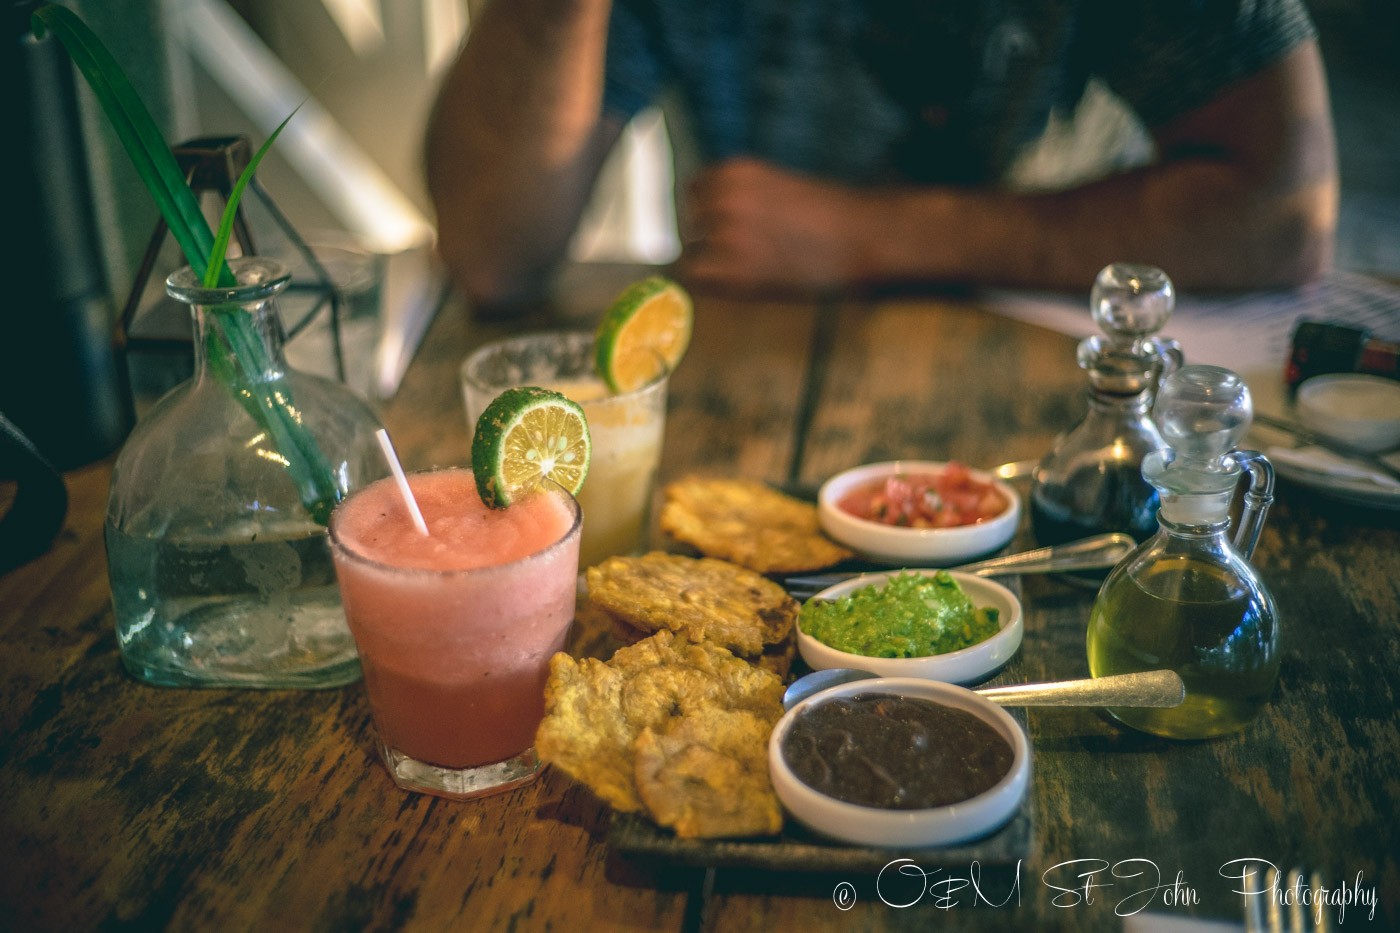 哥斯达黎加行程:诺萨拉美食